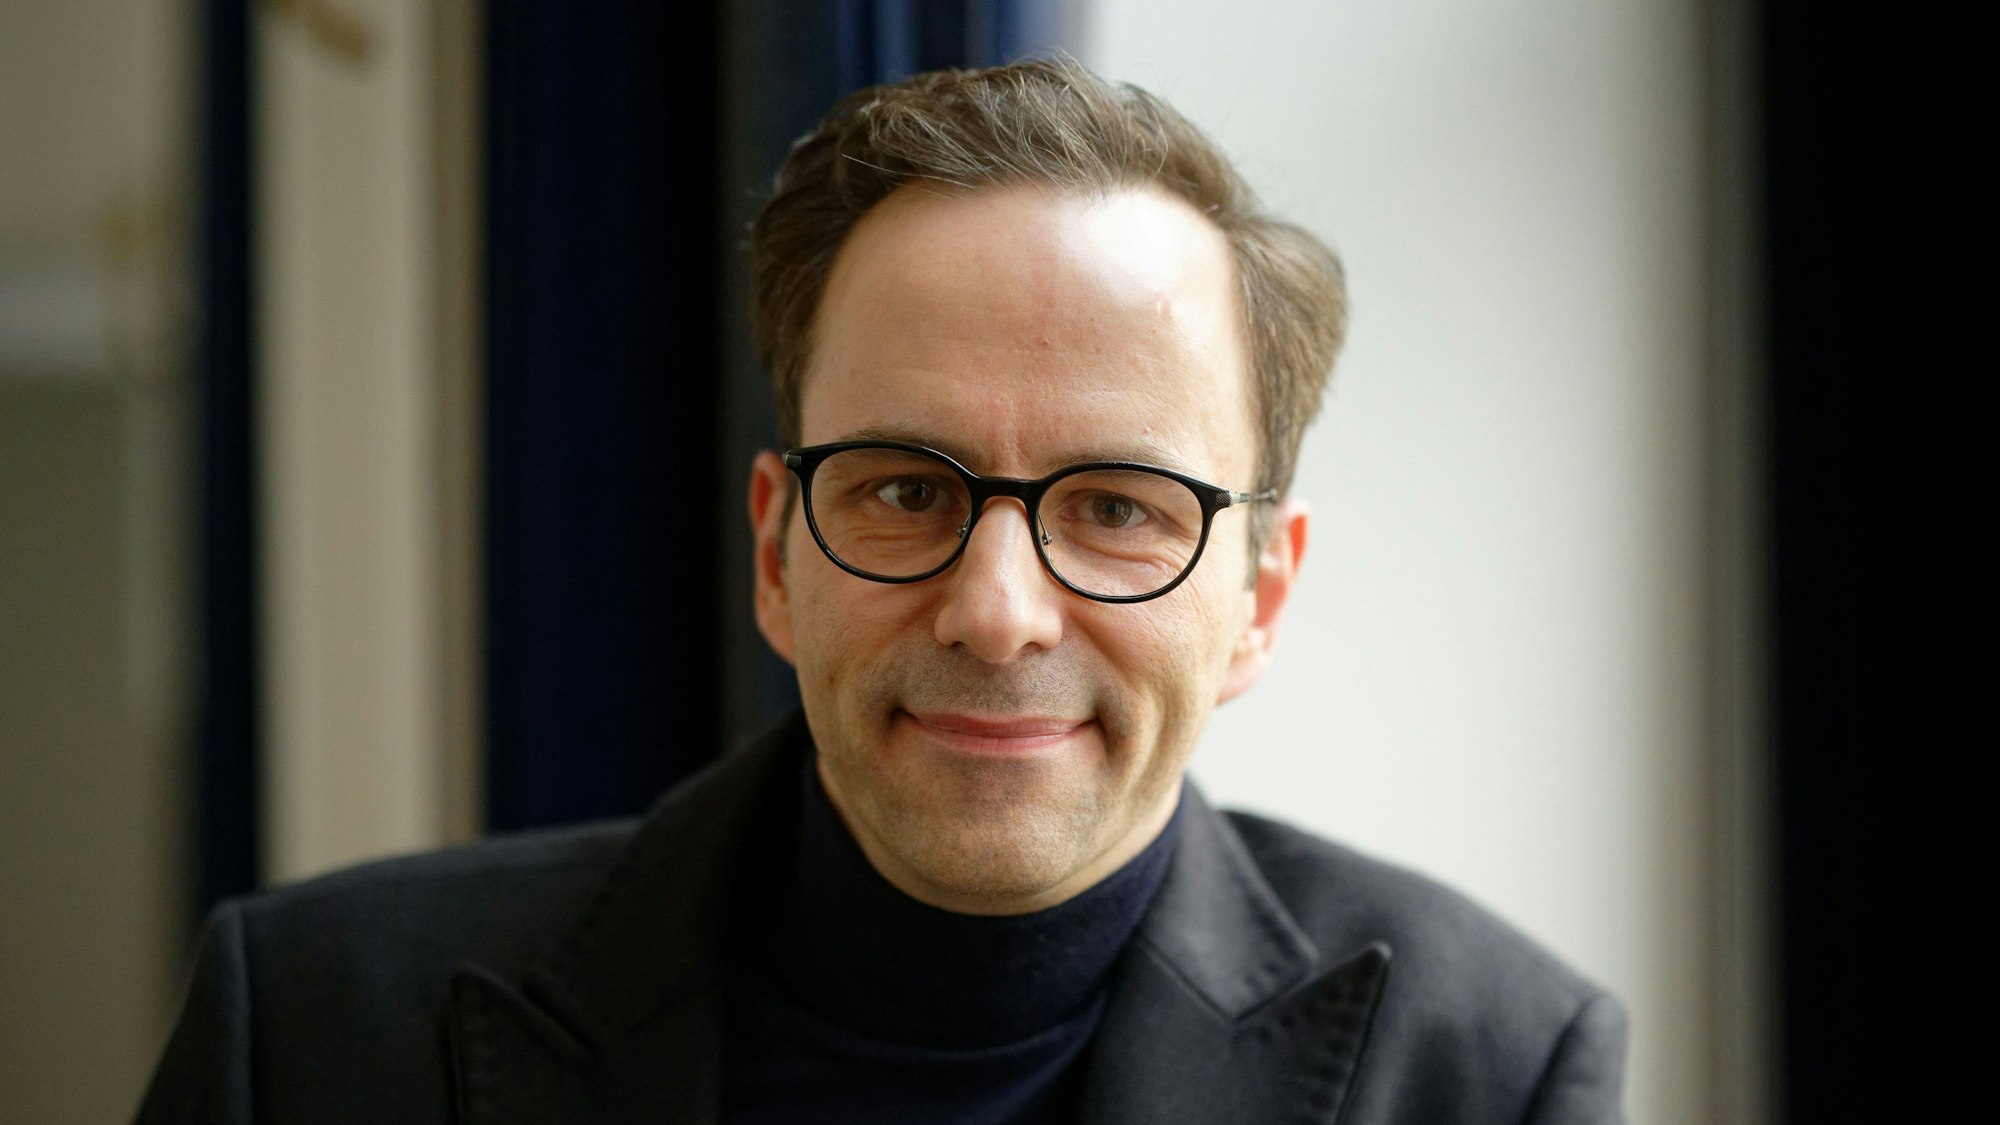 Kurt Krömer, Berliner Humorist und Schauspieler, ganz in schwarz gekleidet.